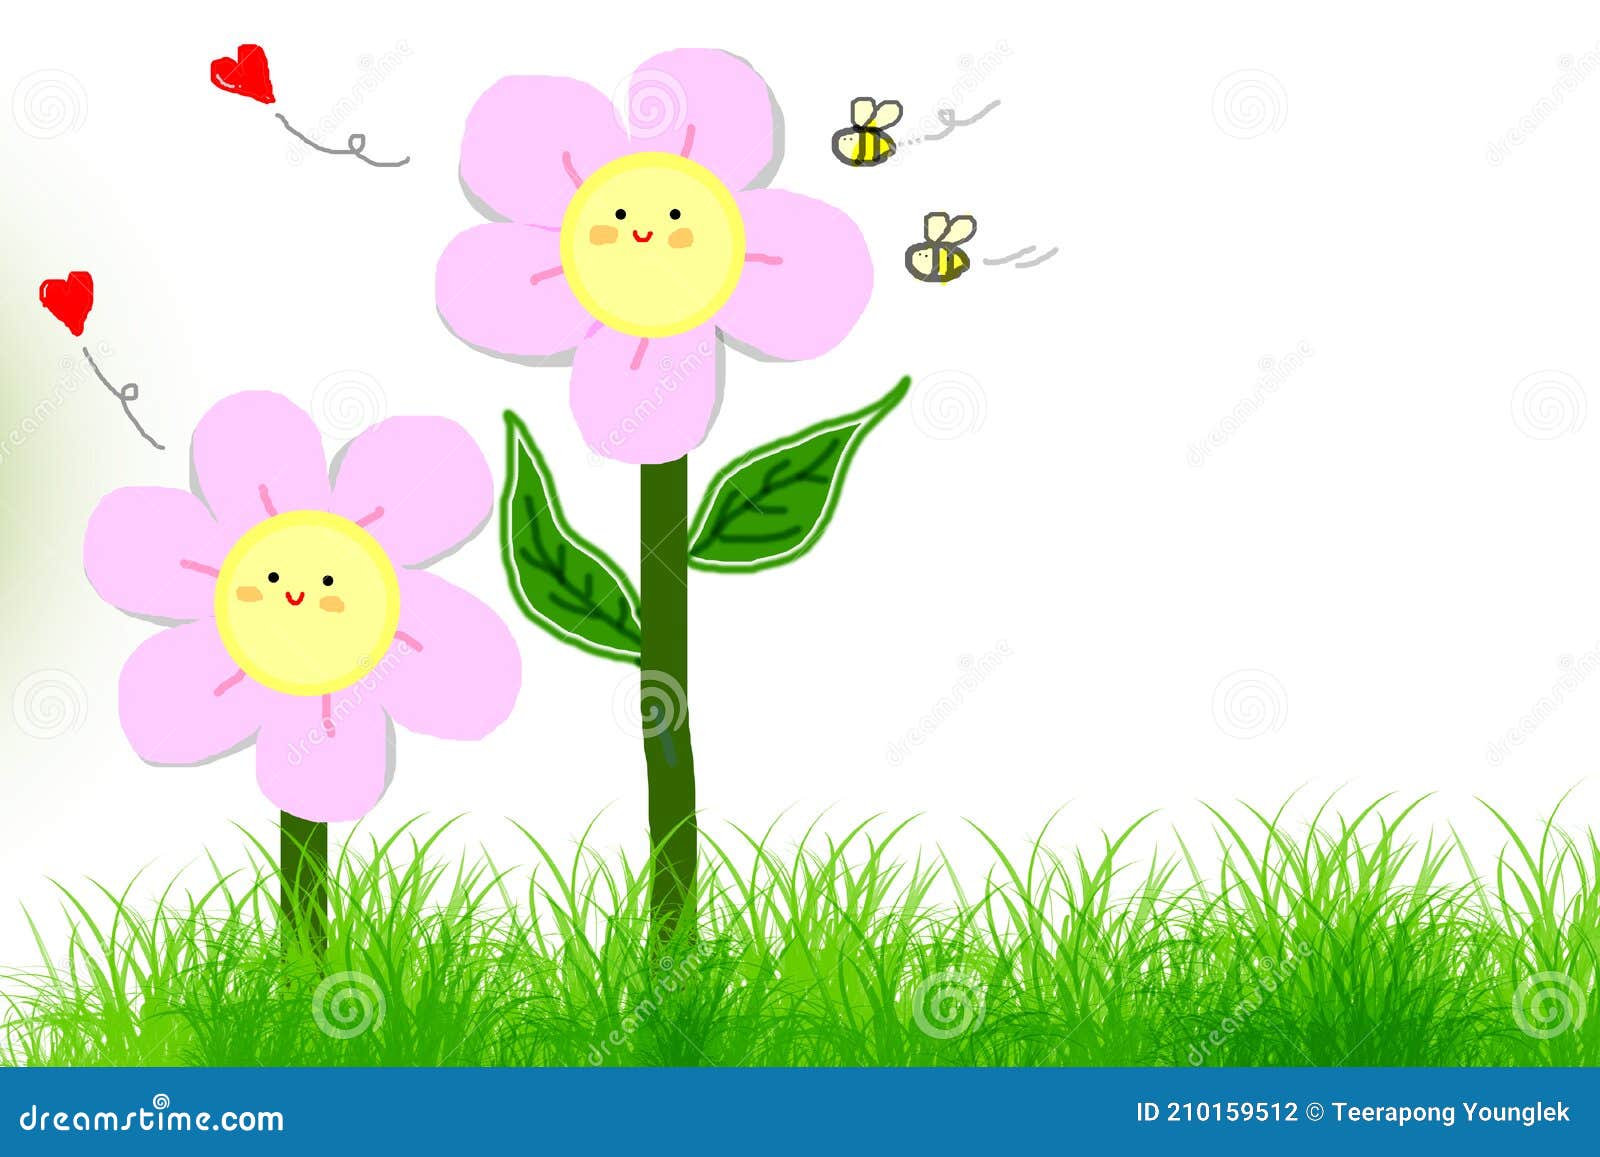 Flores Florescendo Em Um Bom Dia Vetor De Desenho Animado Em Fundo Branco  Ilustração Stock - Ilustração de isolado, casamento: 210159512